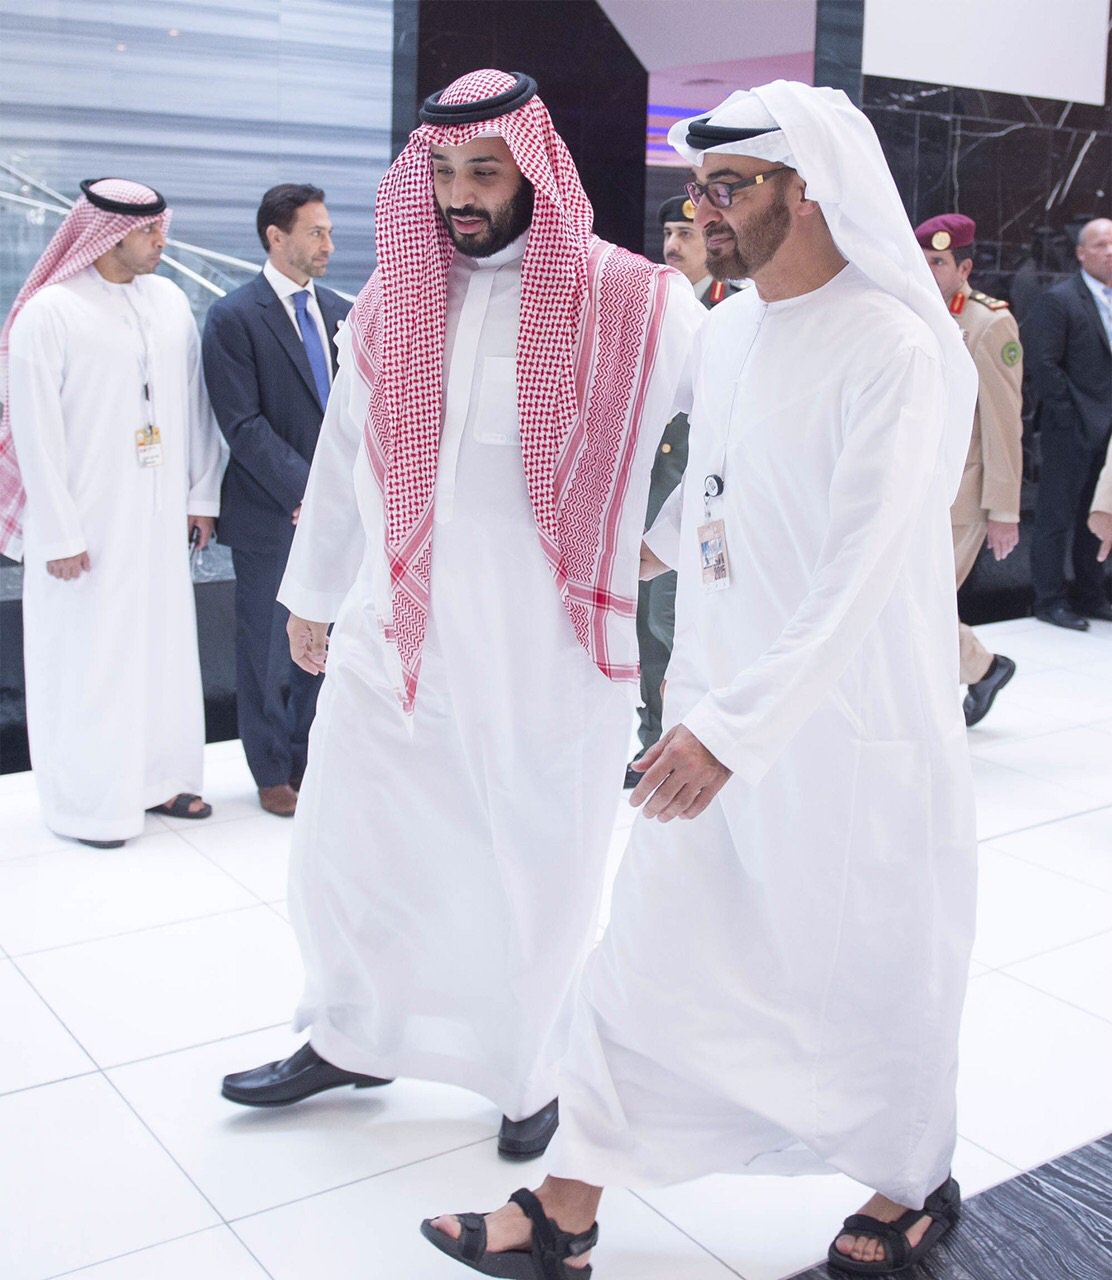 لوموند: محمد بن سلمان يستنسخ قمع الإمارات التي سلبتها أبوظبي الإرادة